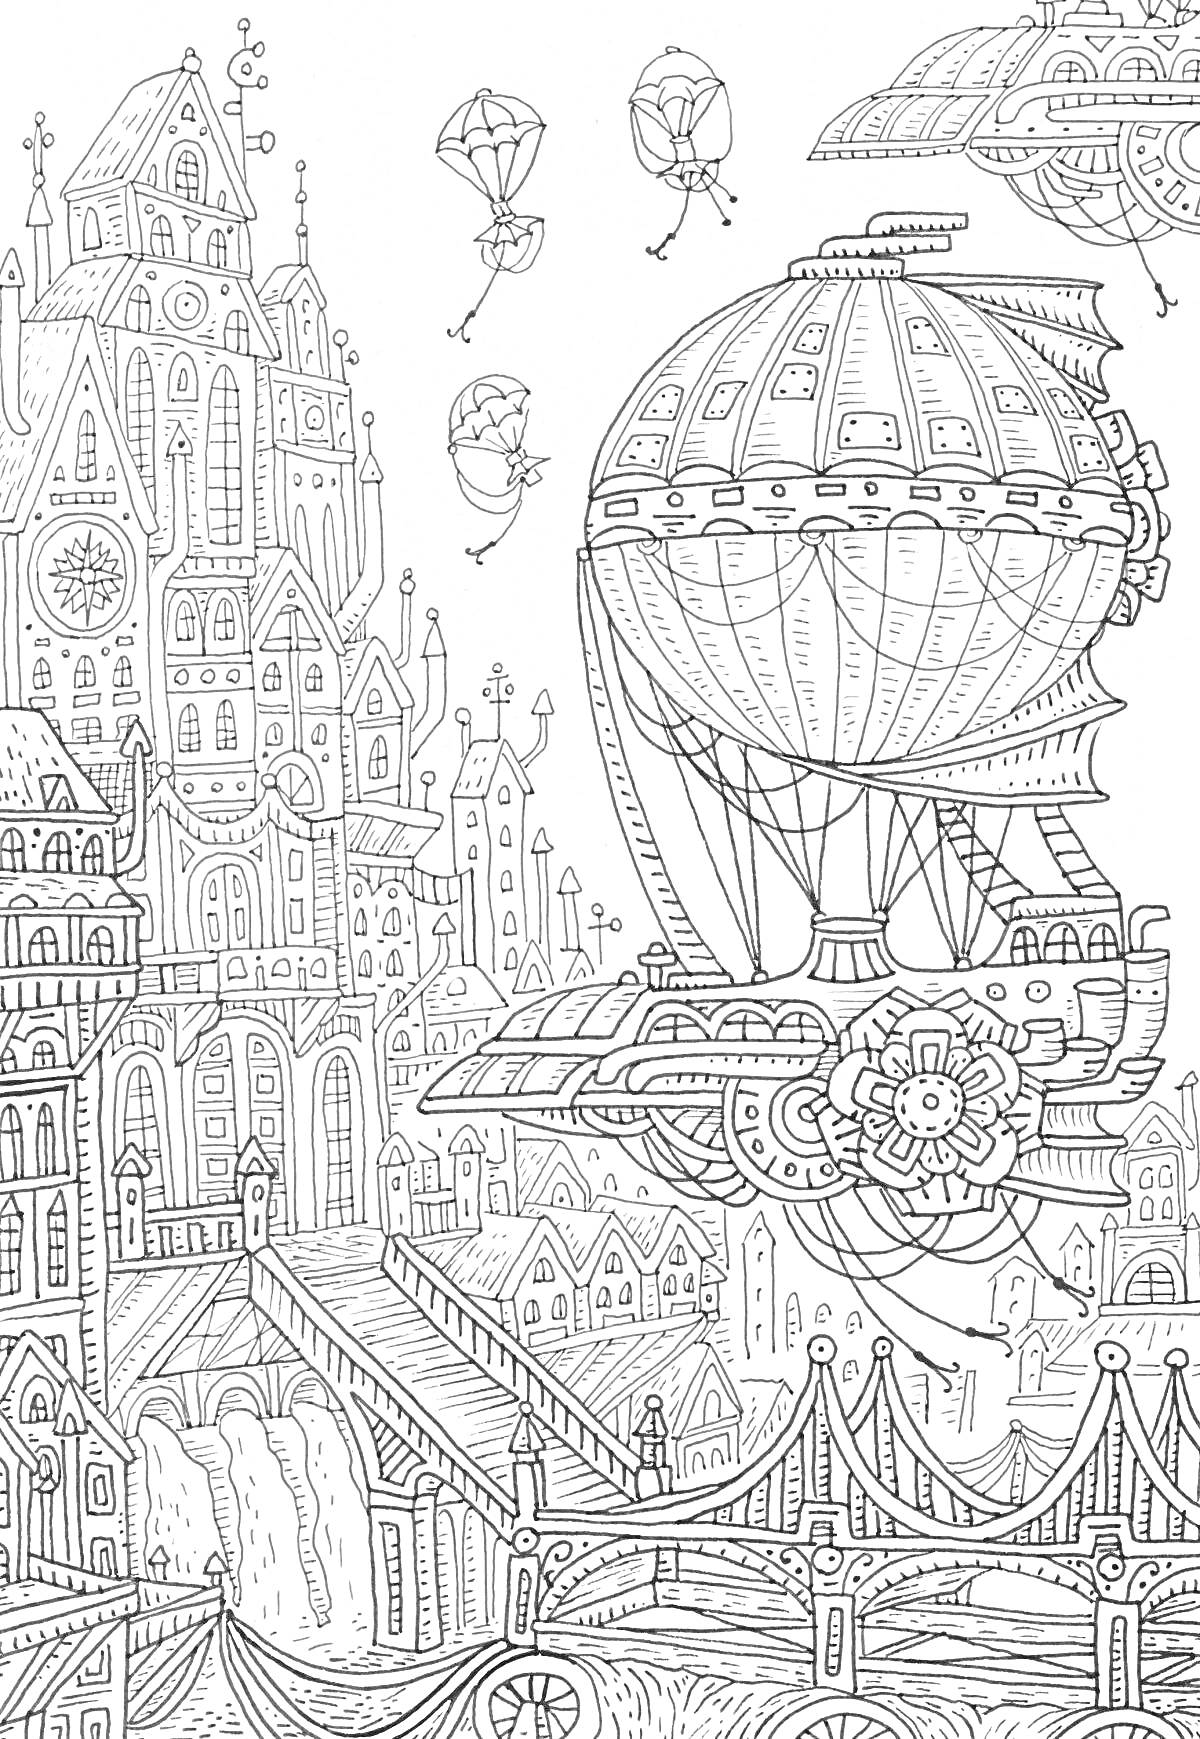 На раскраске изображено: Будущее, Воздухоплавание, Высокие здания, Архитектура, Здания, Дом, Мост, Дирижабль, Воздушные шары